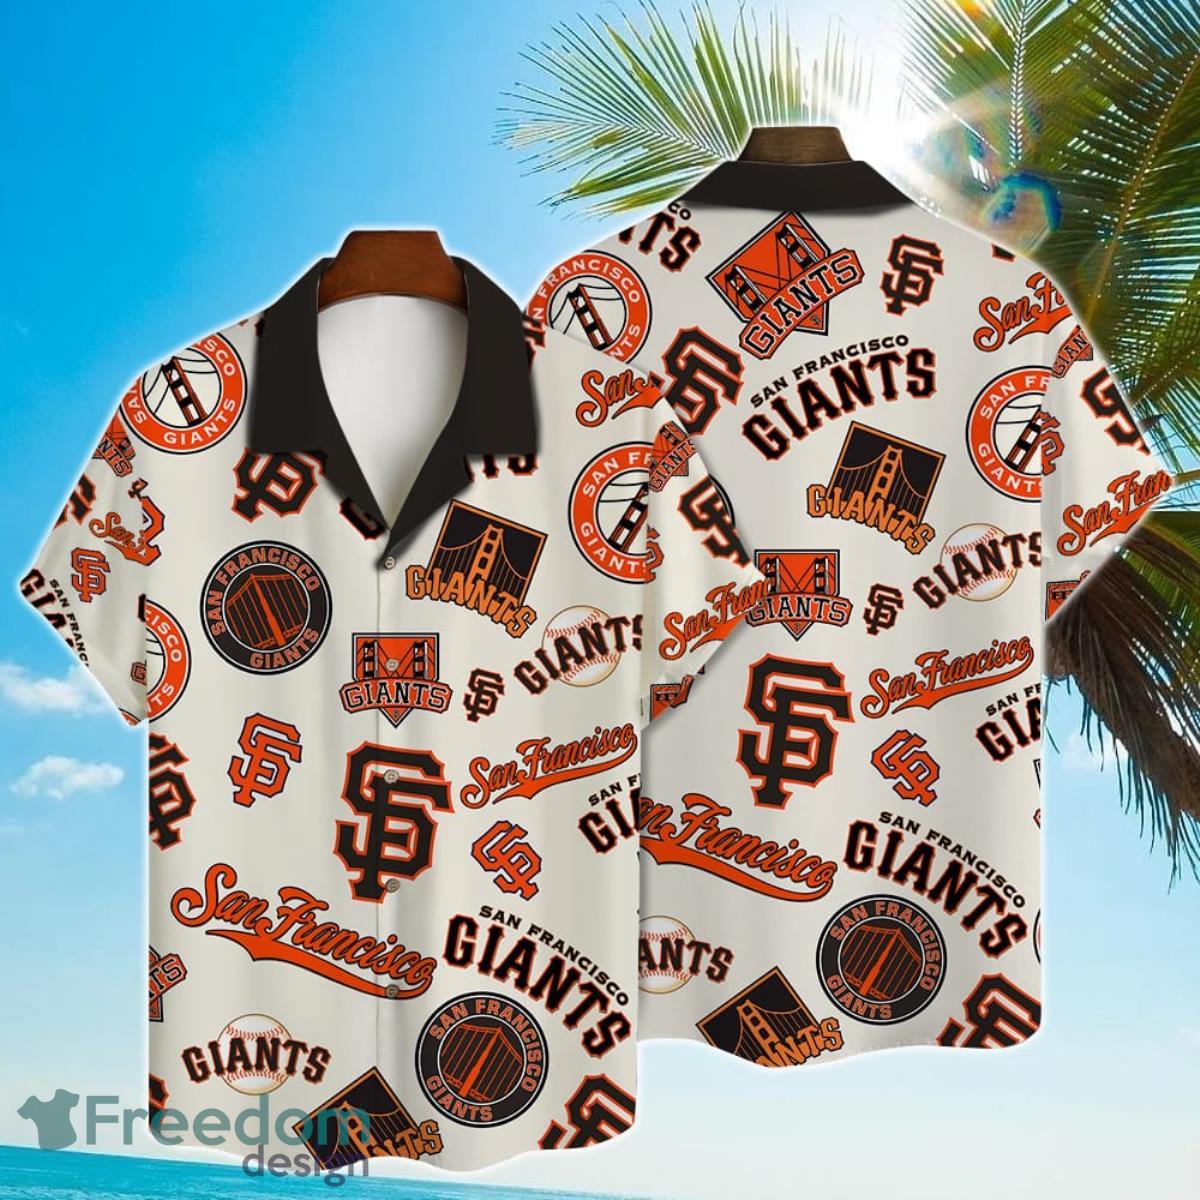 San Francisco Giants Major League Baseball Custom Name Baseball Jersey -  Freedomdesign